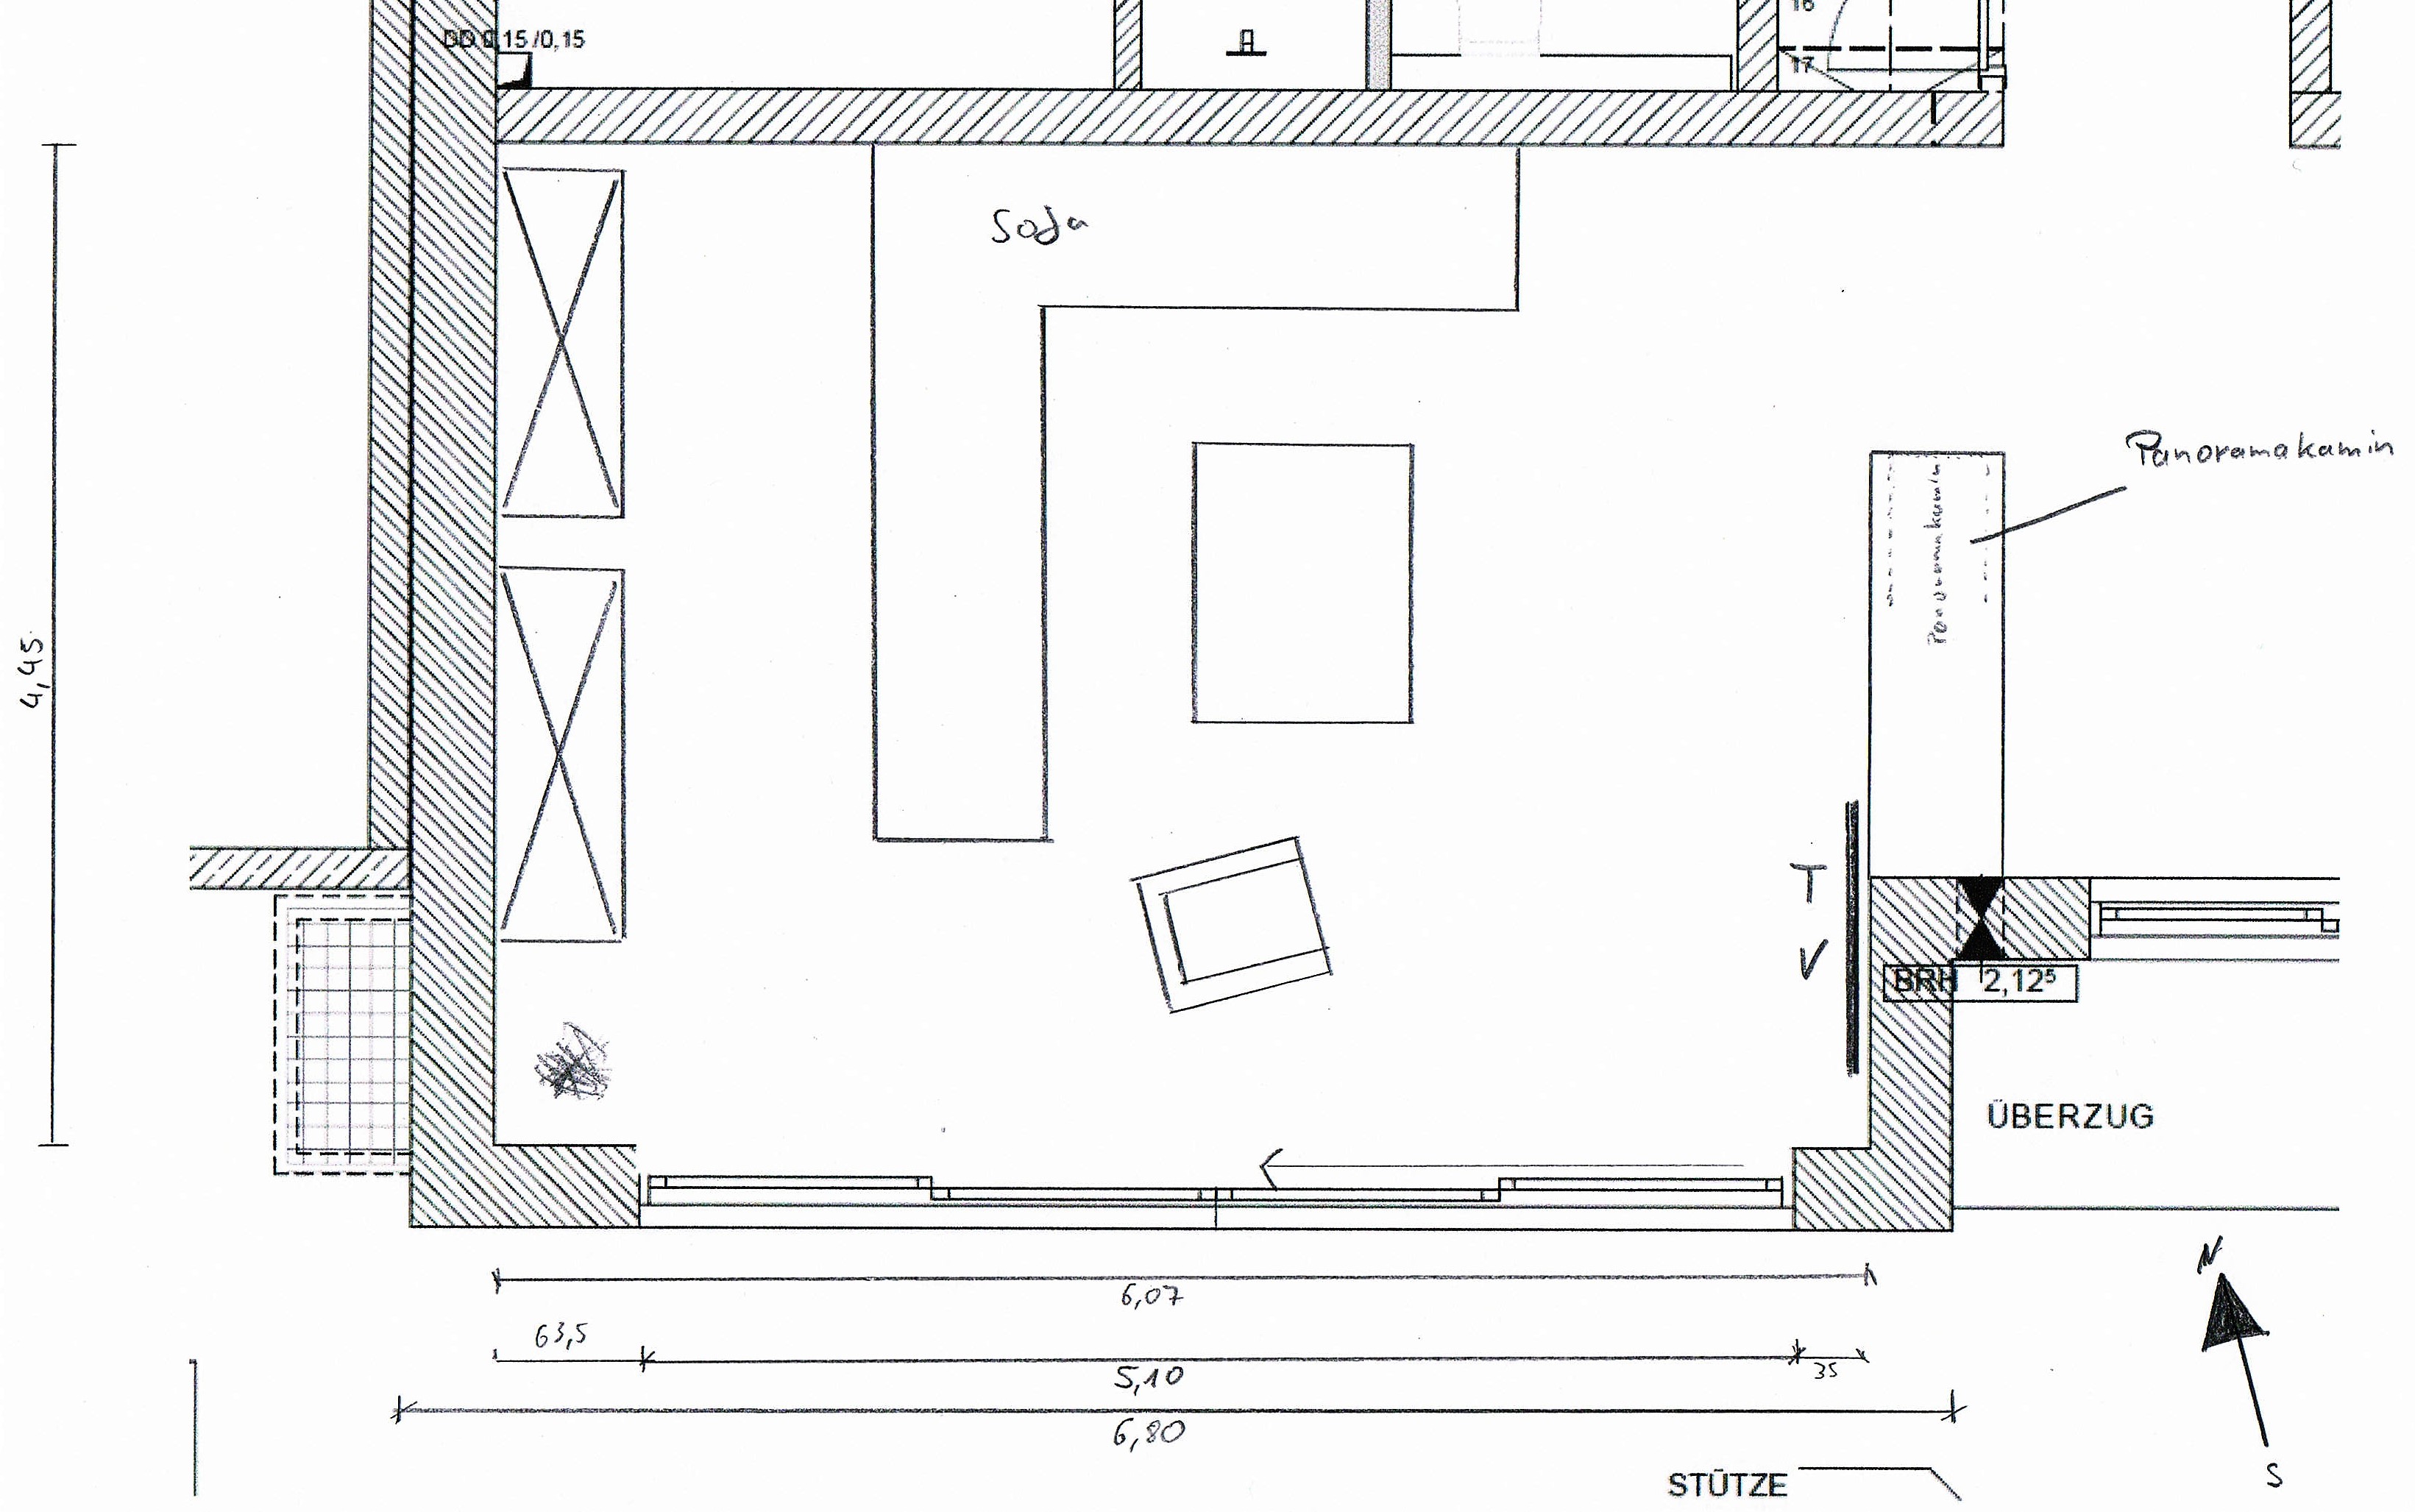 idee-wohnzimmeraufteilung-mit-moebelanordnung-und-tv-position-237487-3.jpg